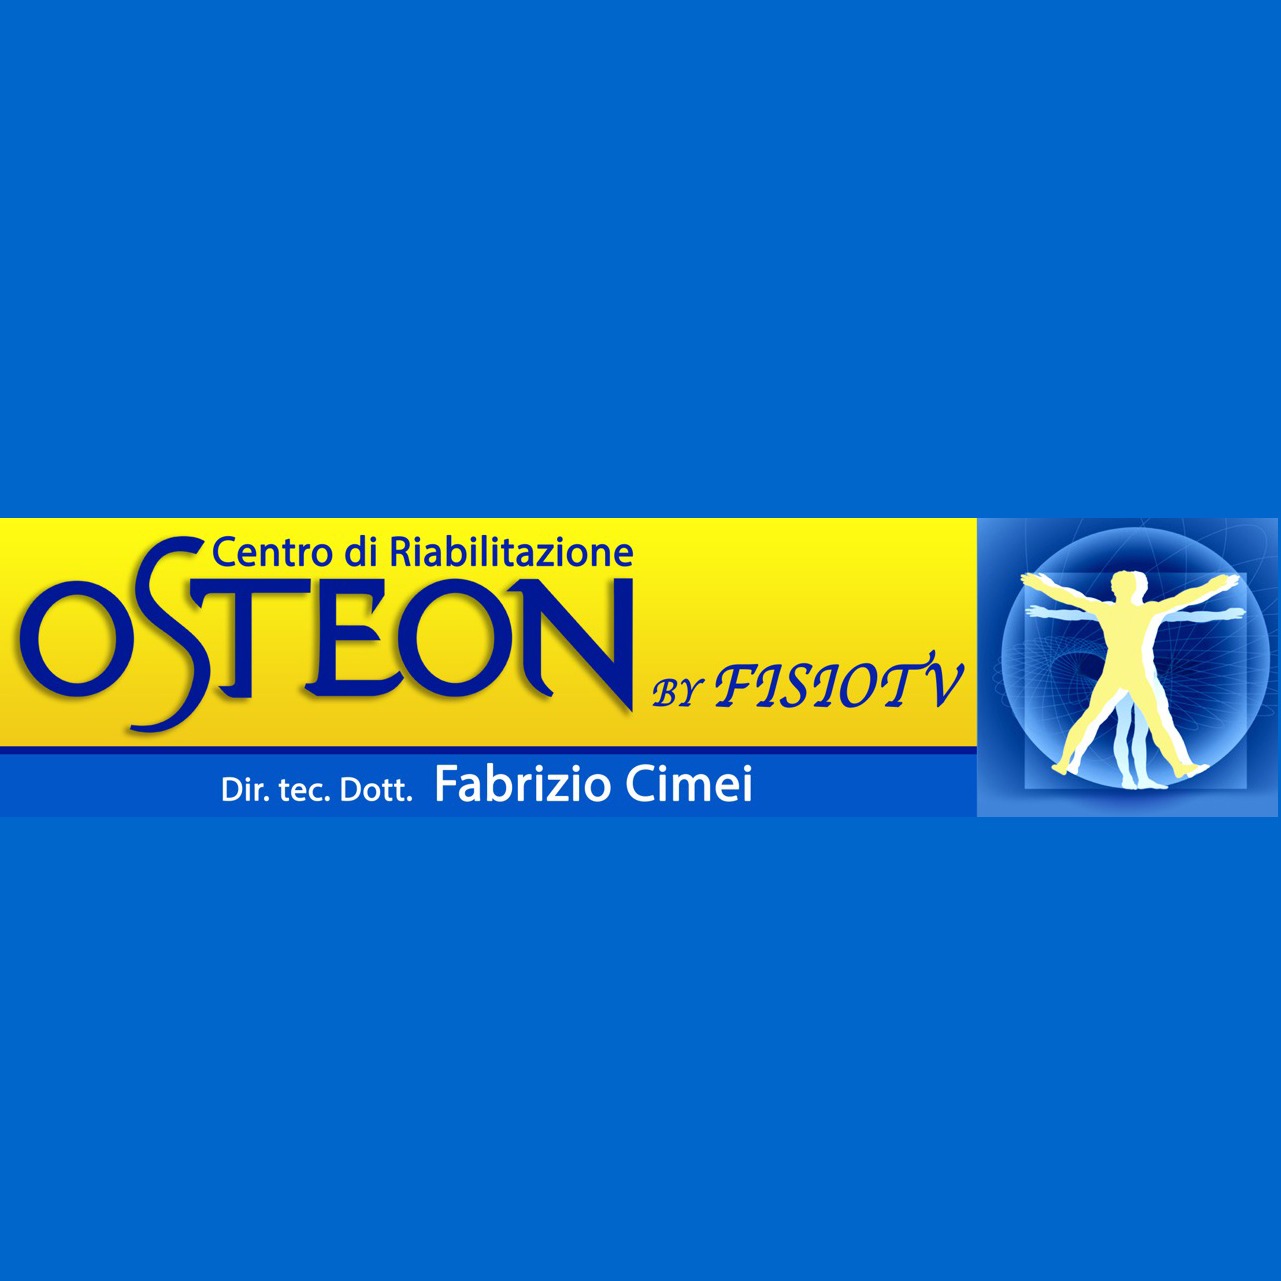 Centro riabilitazione Osteon by Fisiotv